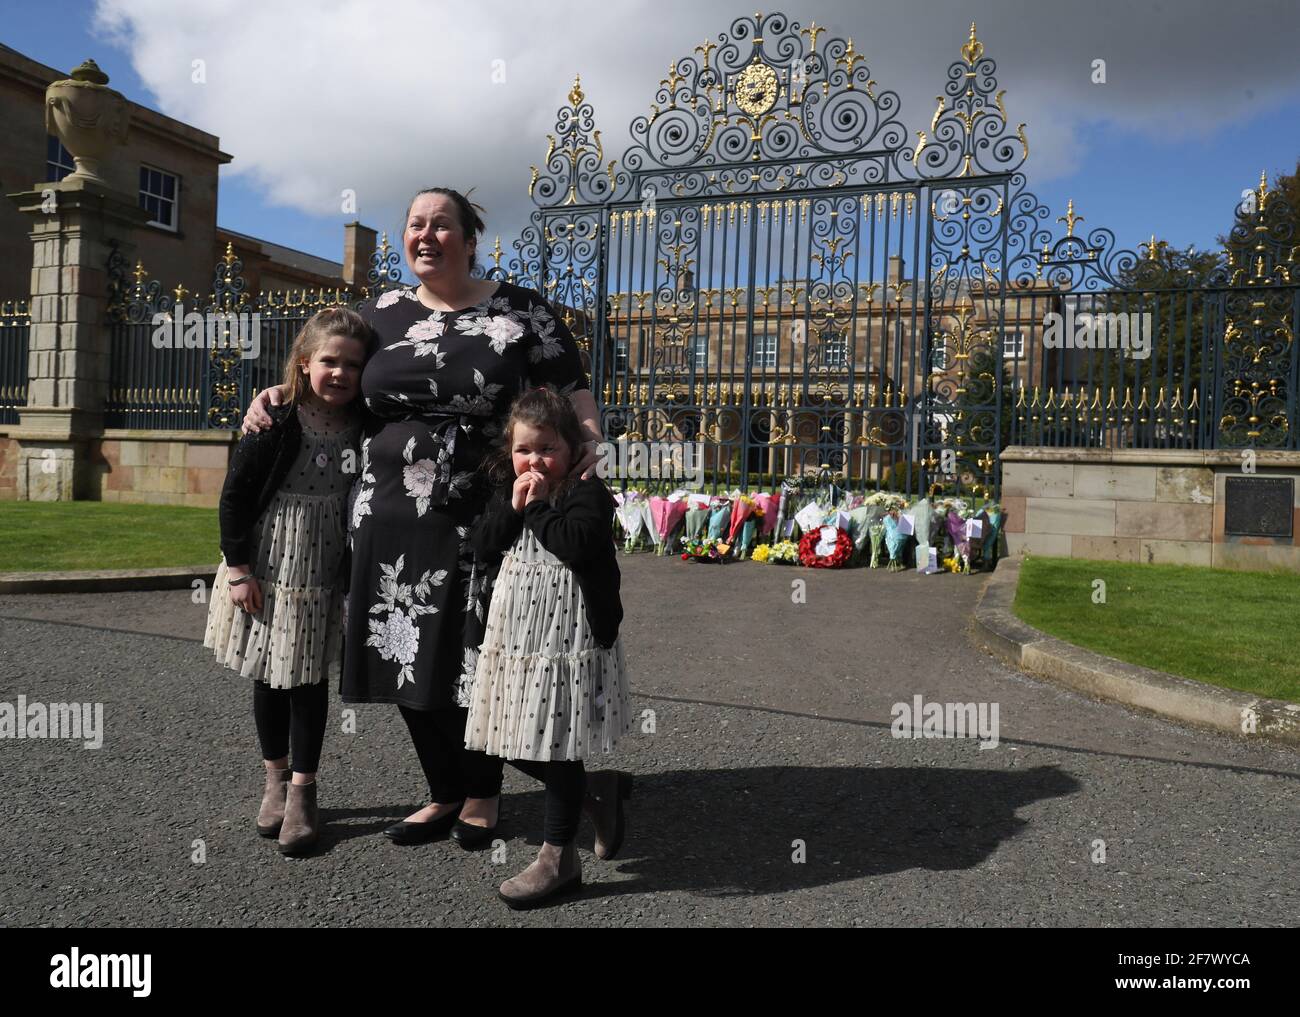 Naomi Armstrong-Cotter und ihre Töchter Lillie, 6, (links) und Essie, 5, nachdem sie nach der Ankündigung des Todes des Herzogs von Edinburgh im Alter von 99 Jahren Blumen vor den Toren von Hillsborough Castle in Nordirland gelegt hatten. Bilddatum: Samstag, 10. April 2021. Stockfoto